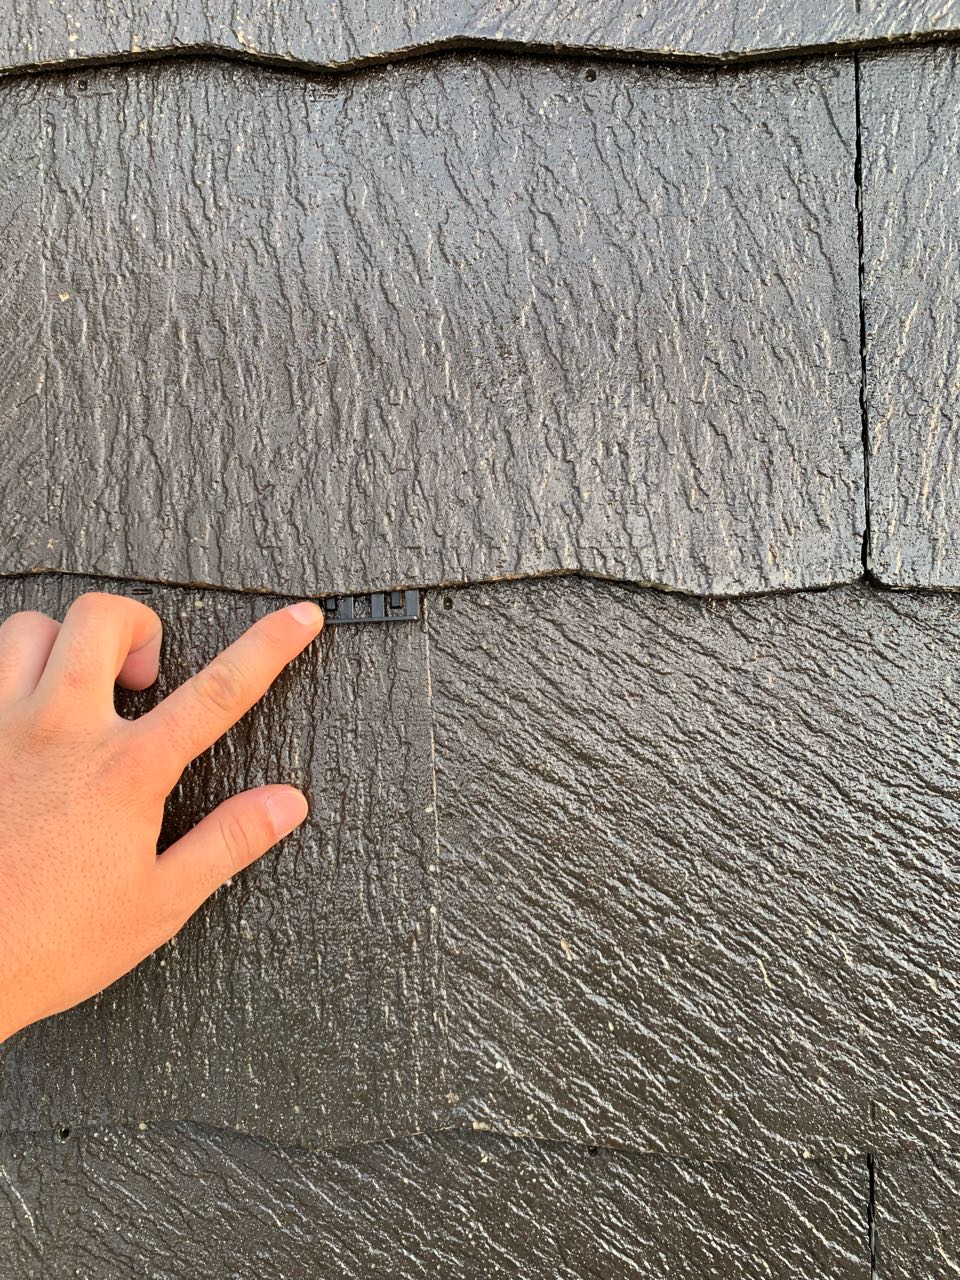 下塗りが終わりましたらカラーベストの重なりの縁を切る部材を差し込んでいきます。屋根材の隙間を塗料がふさがないようにするための板状のスペーサーです。